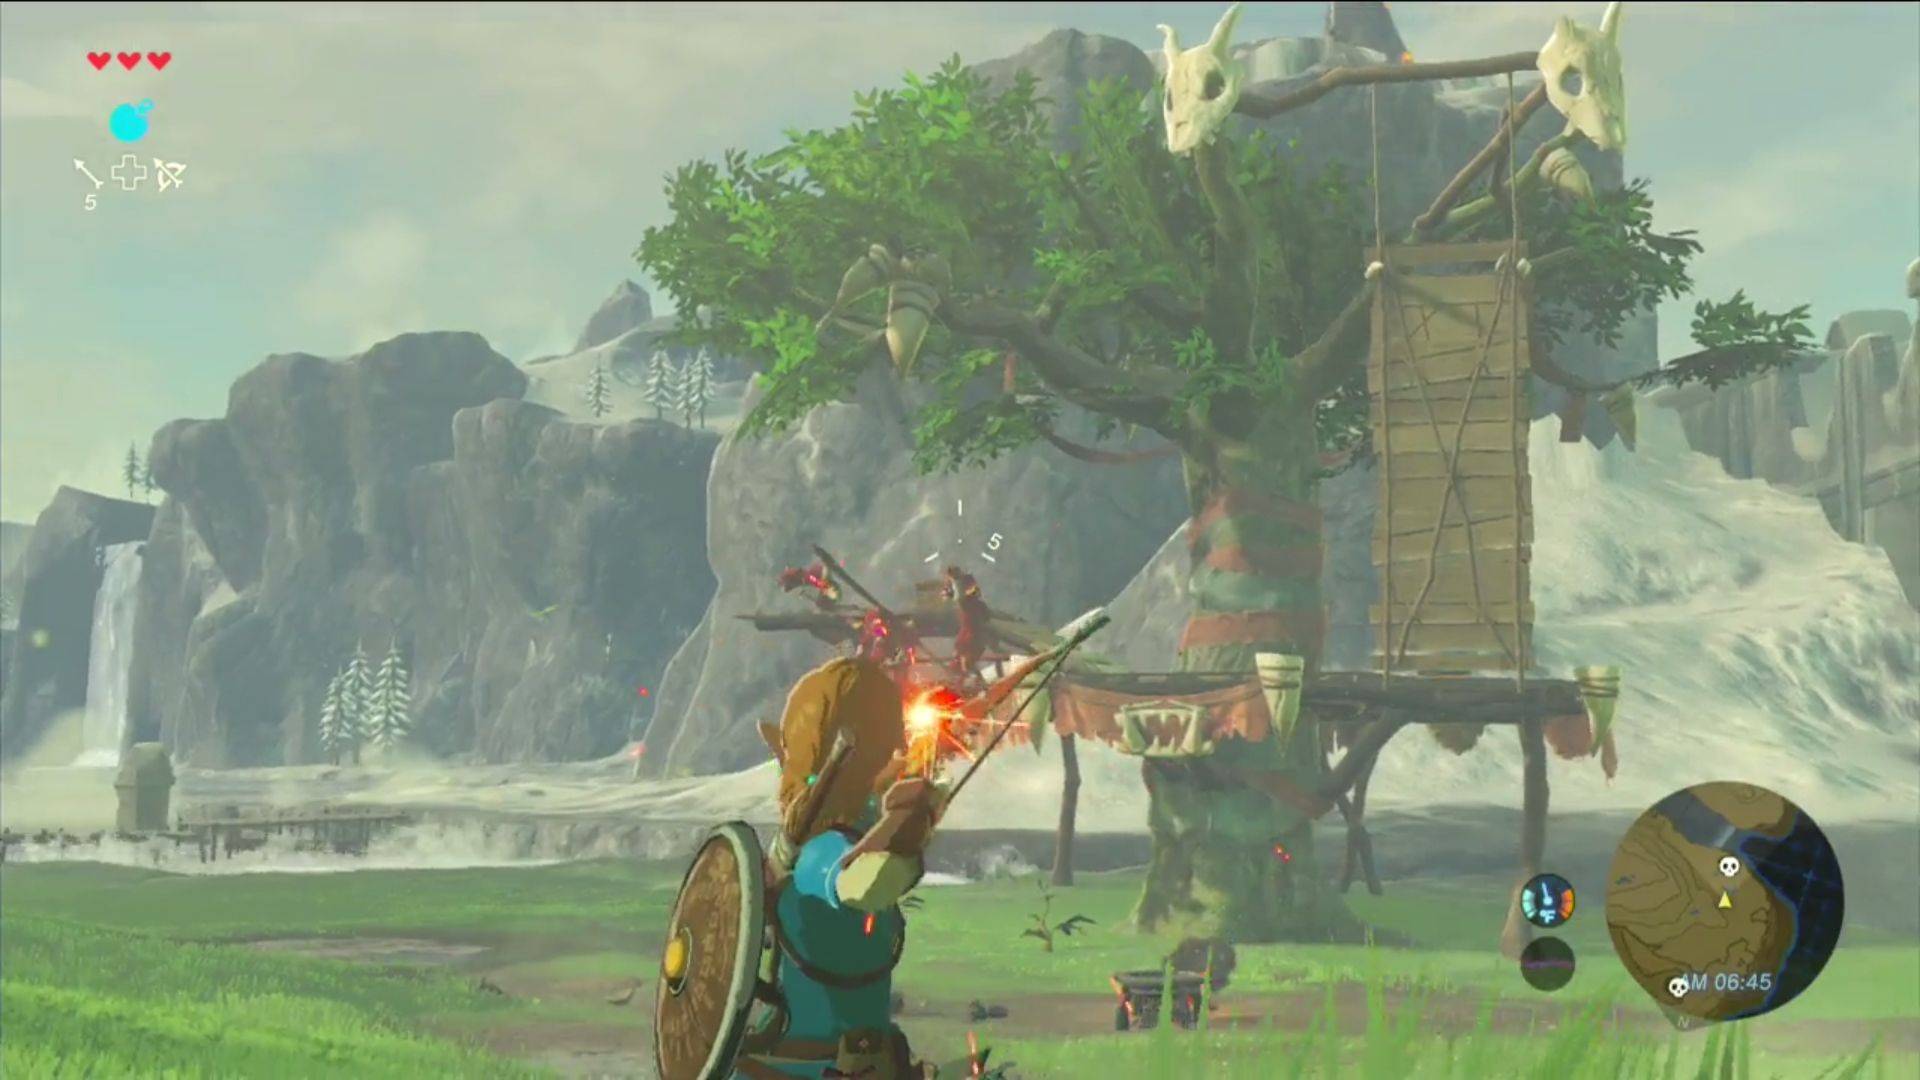 Sandbox-Spiele: Ein Screenshot aus Breath of the Wild zeigt, wie Link seinen Bogen bereithält, um auf Feinde zu schießen 